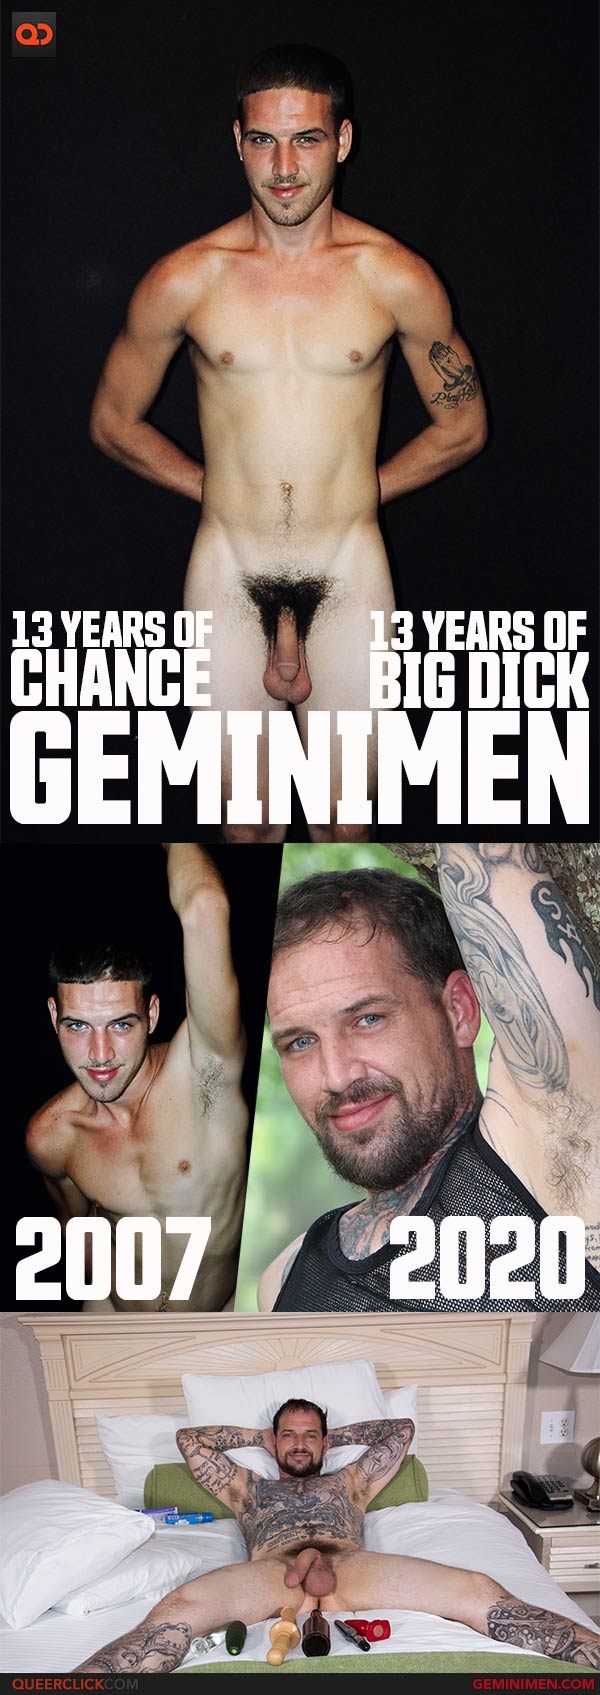 Gemini Men: Chance 2007-2020: 13 Years of Big Dick!